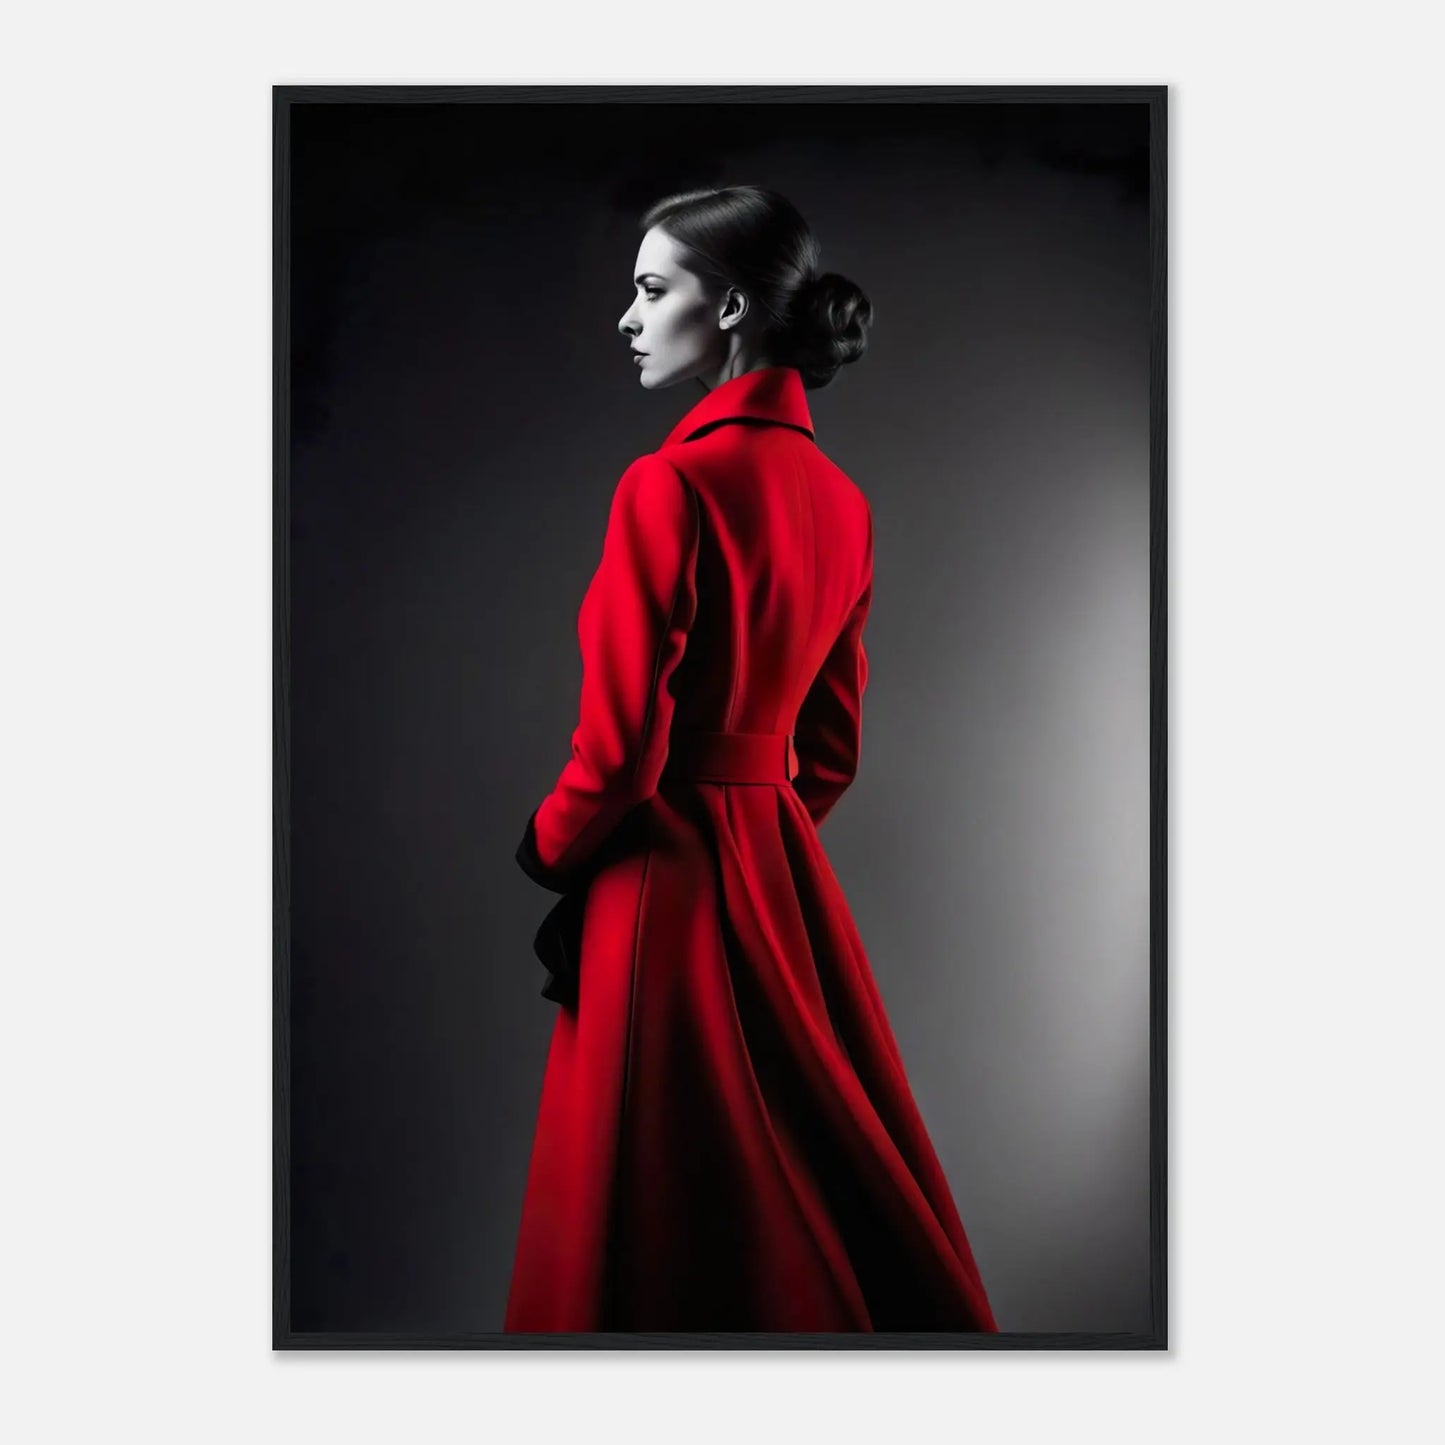 Gerahmtes Premium-Poster - Frau im roten Mantel - Schwarz-Weiß, KI-Kunst - RolConArt, Schwarz-Weiß mit Akzentfarben, 70x100-cm-28x40-Schwarzer-Rahmen